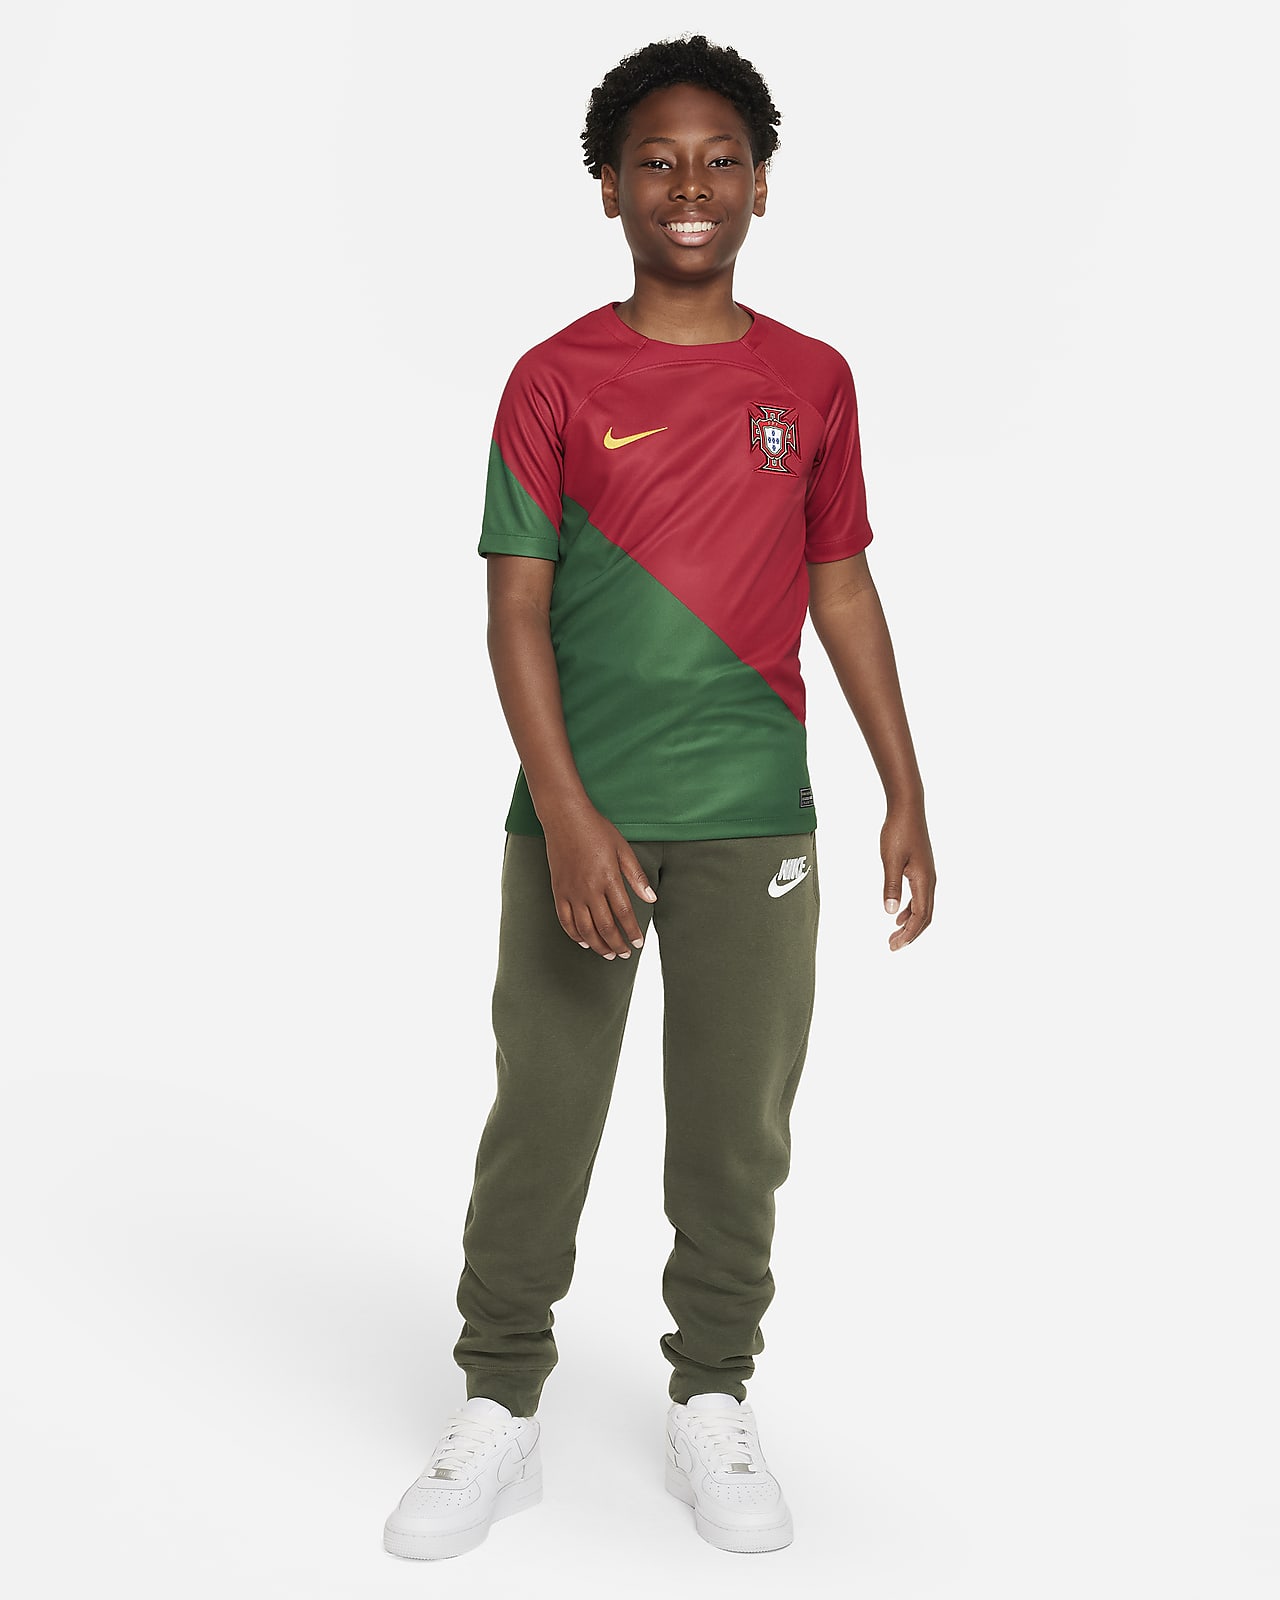 persona que practica jogging Peticionario Emborracharse Primera equipación Stadium Portugal 2022/23 Camiseta de fútbol Nike Dri-FIT  - Niño/a. Nike ES